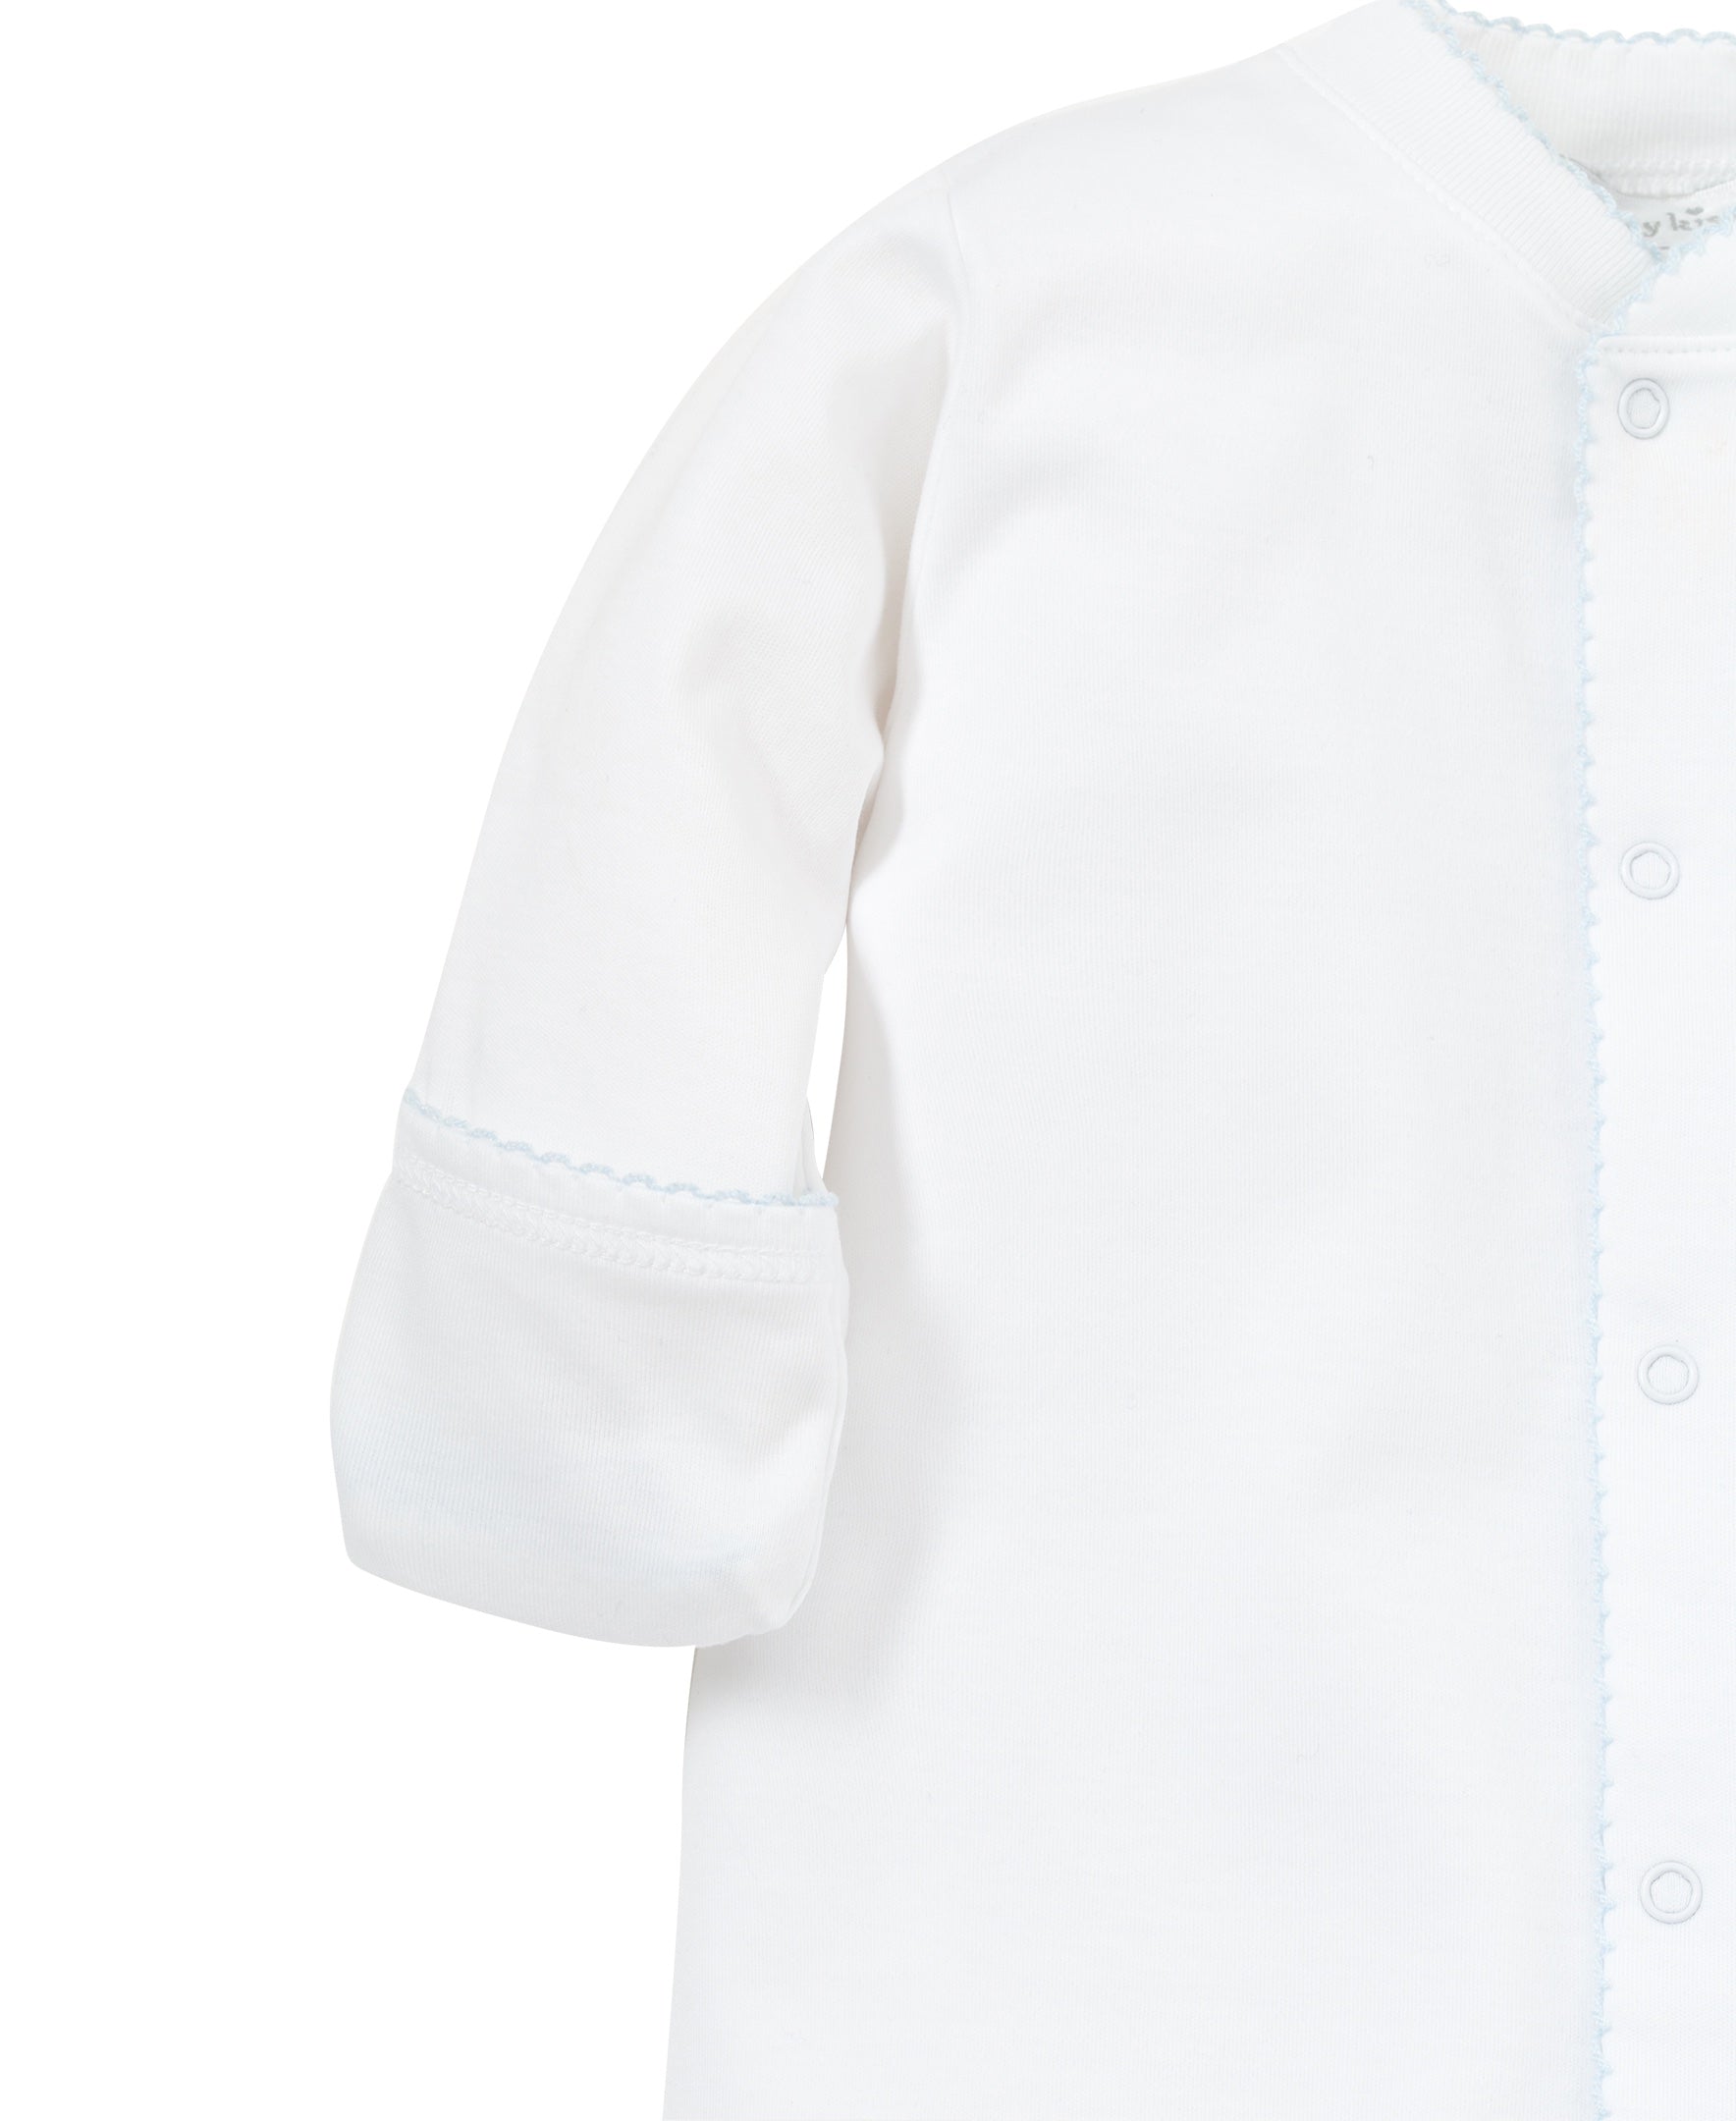 Blue Kissy Basic Converter Gown (White/Lt. Blue)